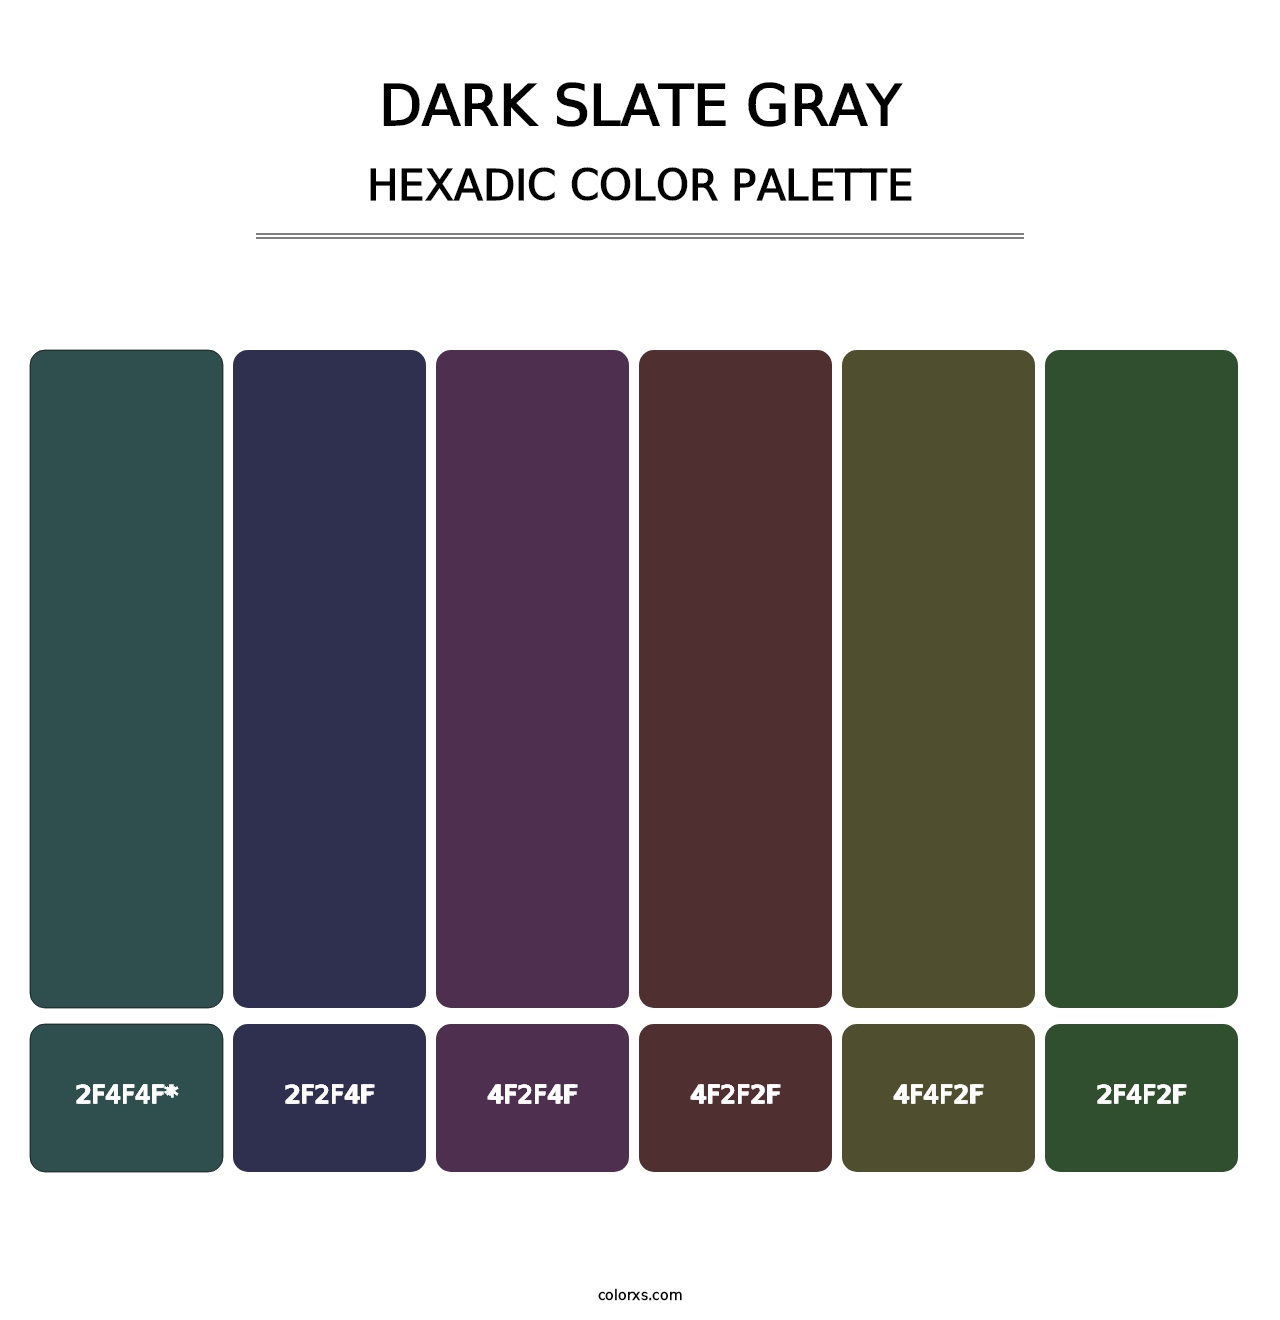 Dark Slate Gray - Hexadic Color Palette